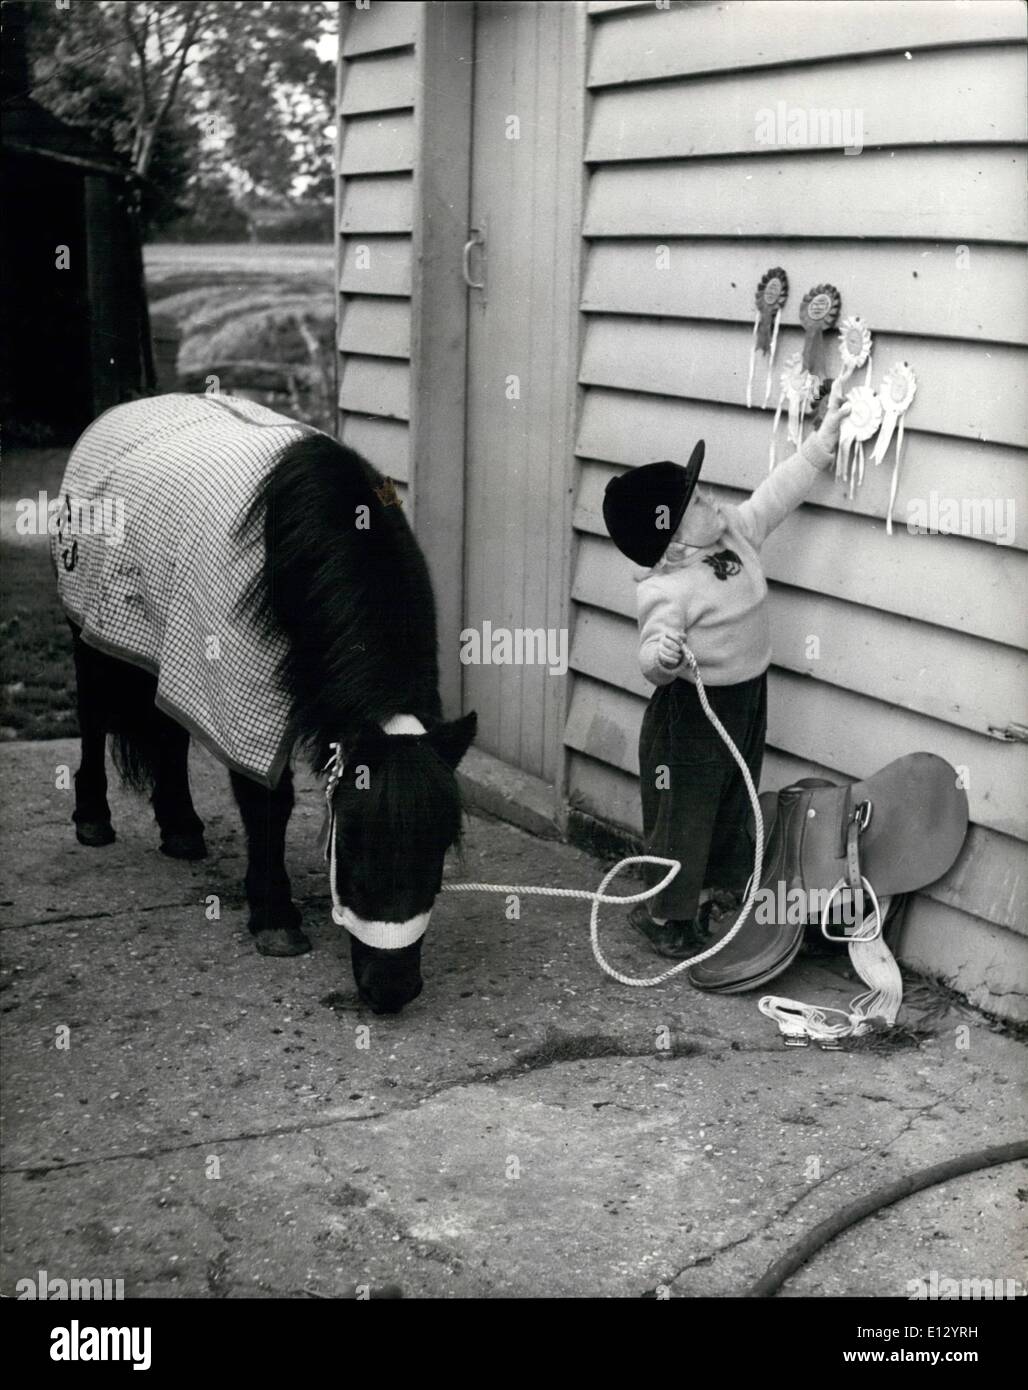 Febbraio 26, 2012 - Il piccolo 18 mese cowgirl, Karen Stock, visualizza i suoi nastri e tiene la corda al suo pony Shotland Johnny. Foto Stock